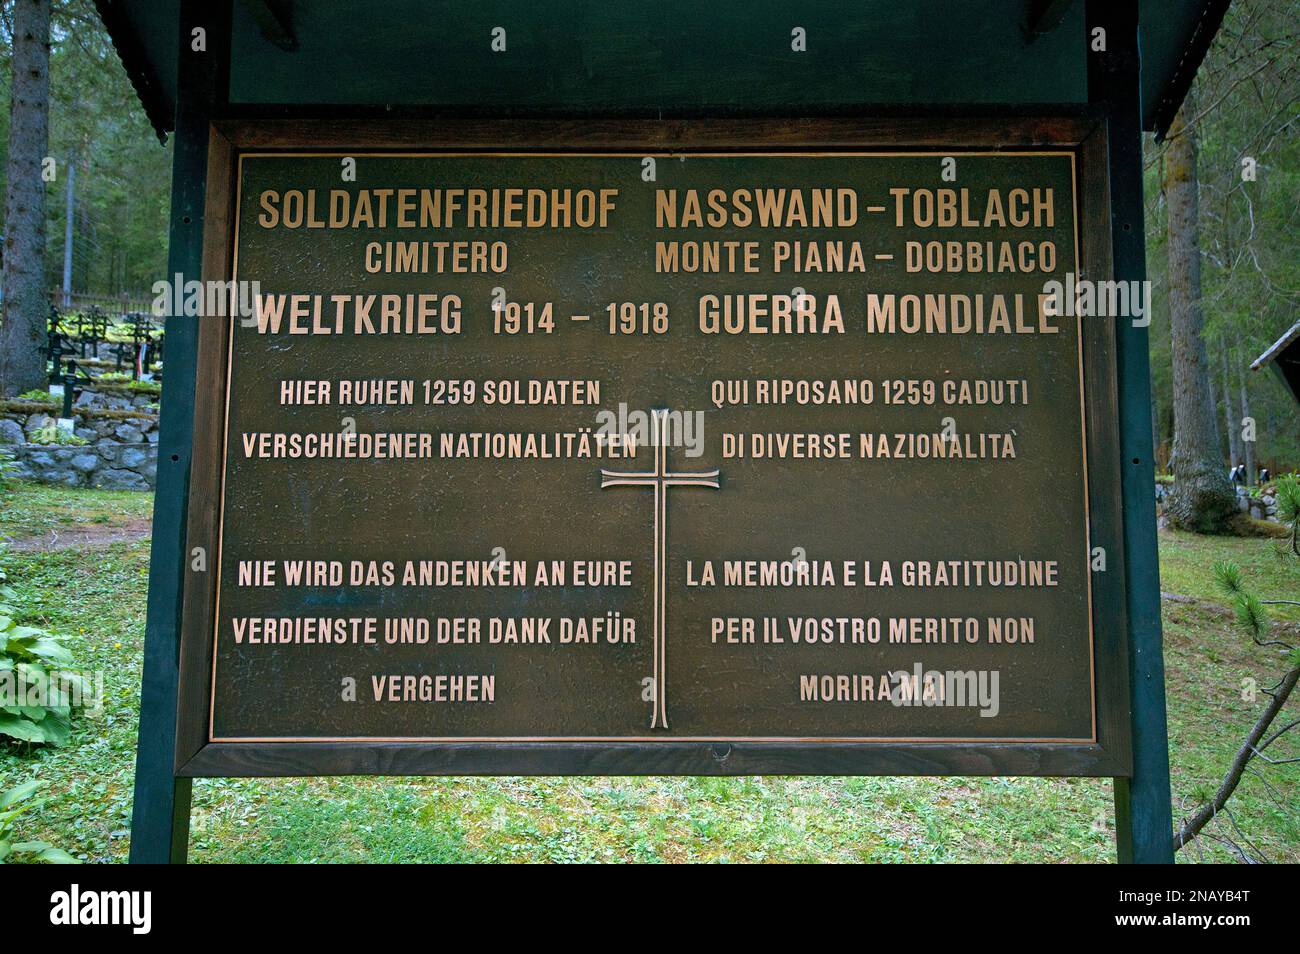 Cimitero Mondiale di Monte piana prima Guerra, Valle di Landro, Dobbiaco, Trentino-Alto Adige, Italia Foto Stock